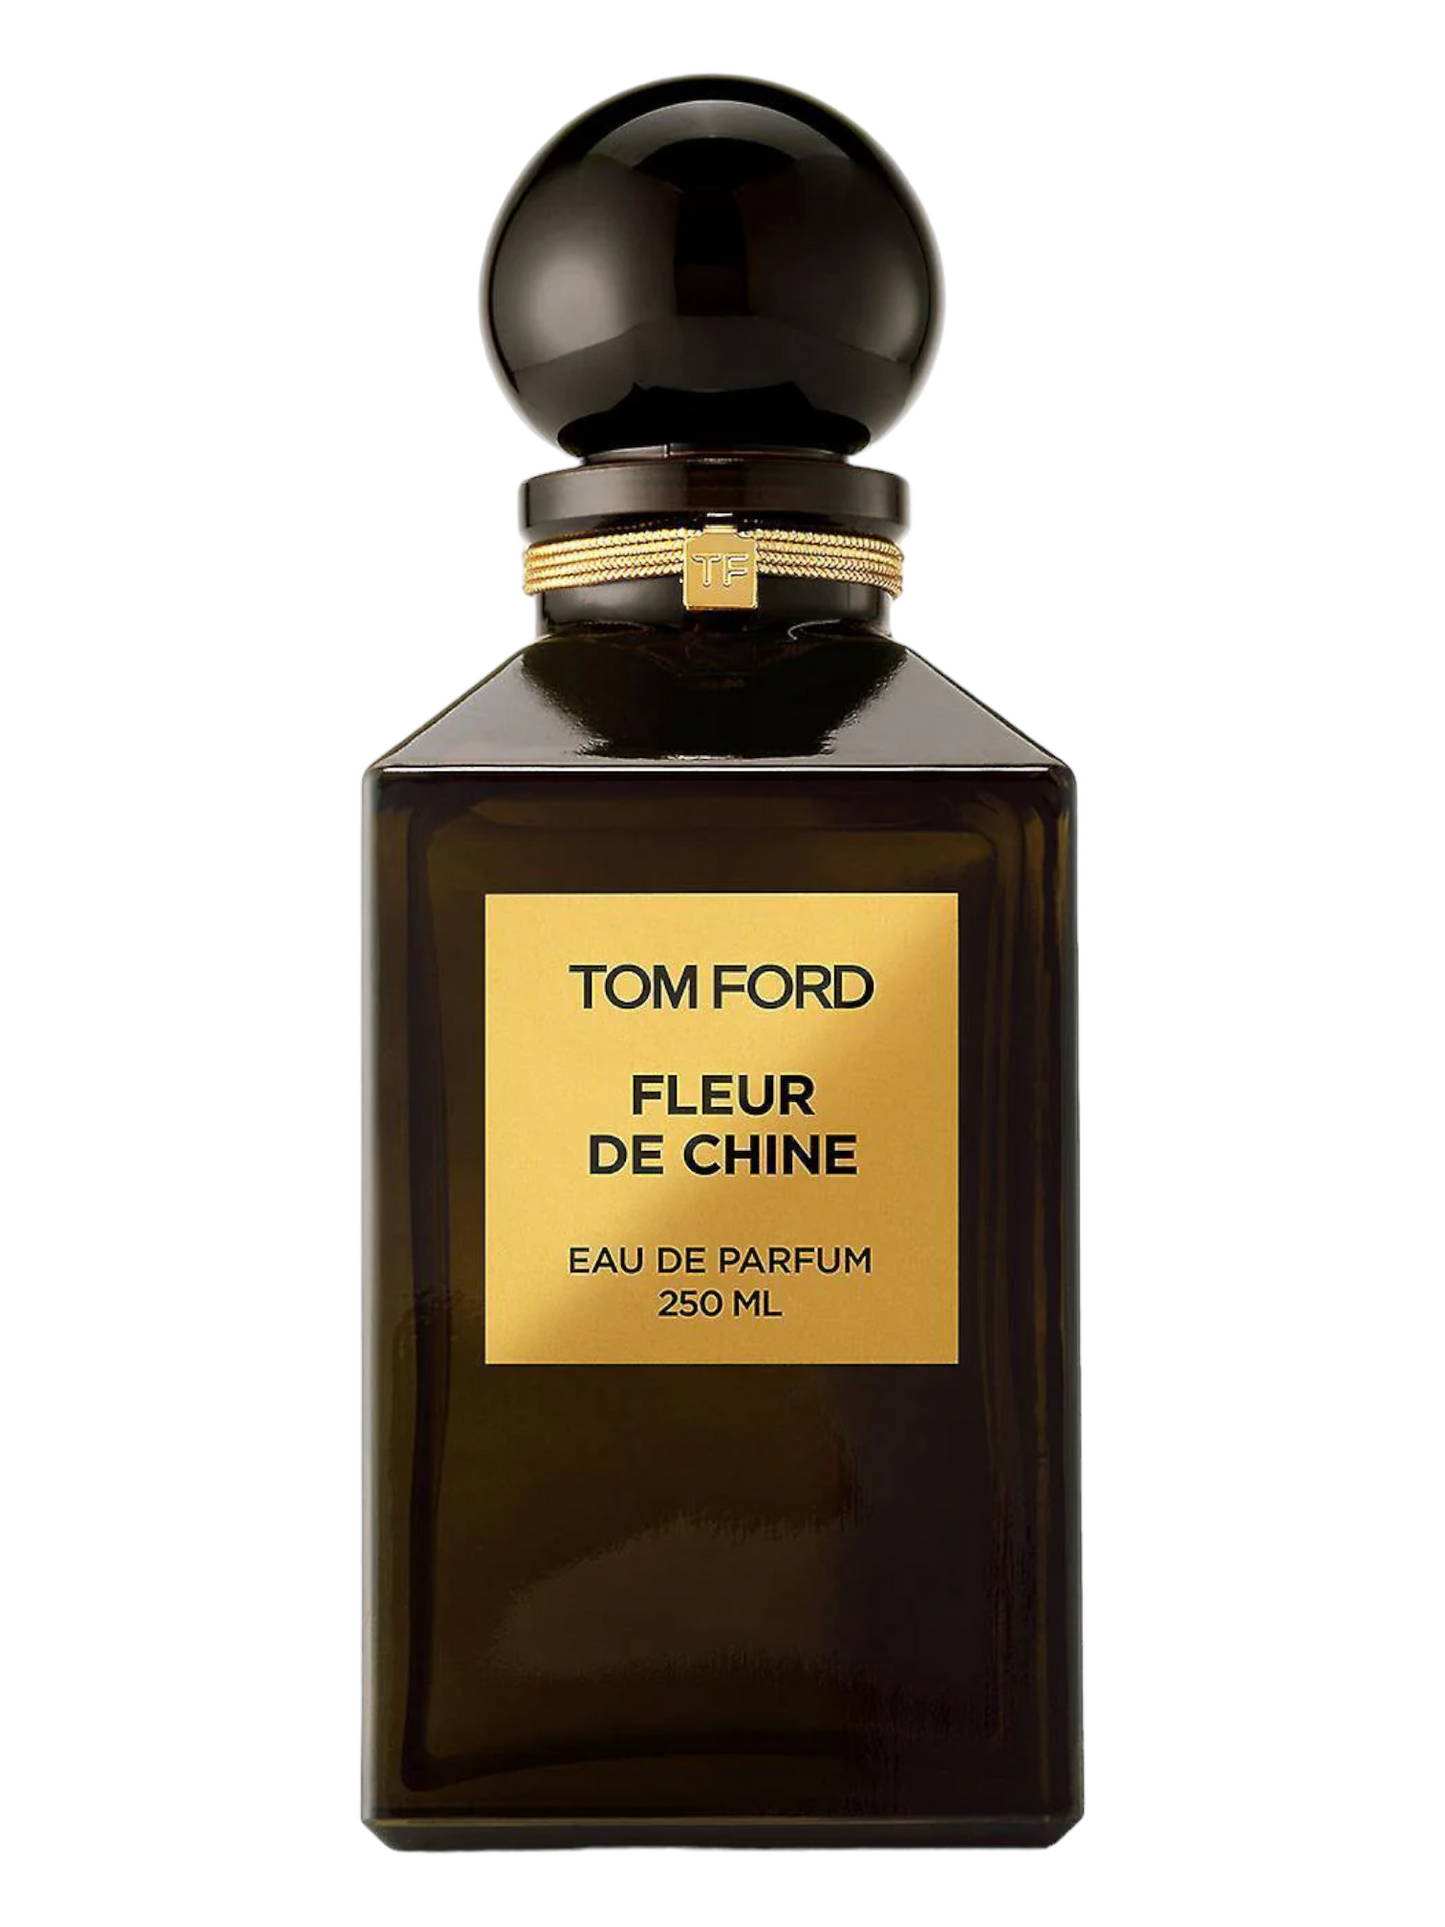 Tom Ford Fleur De Chine Private Blend Eau De Parfum Decant Select Size